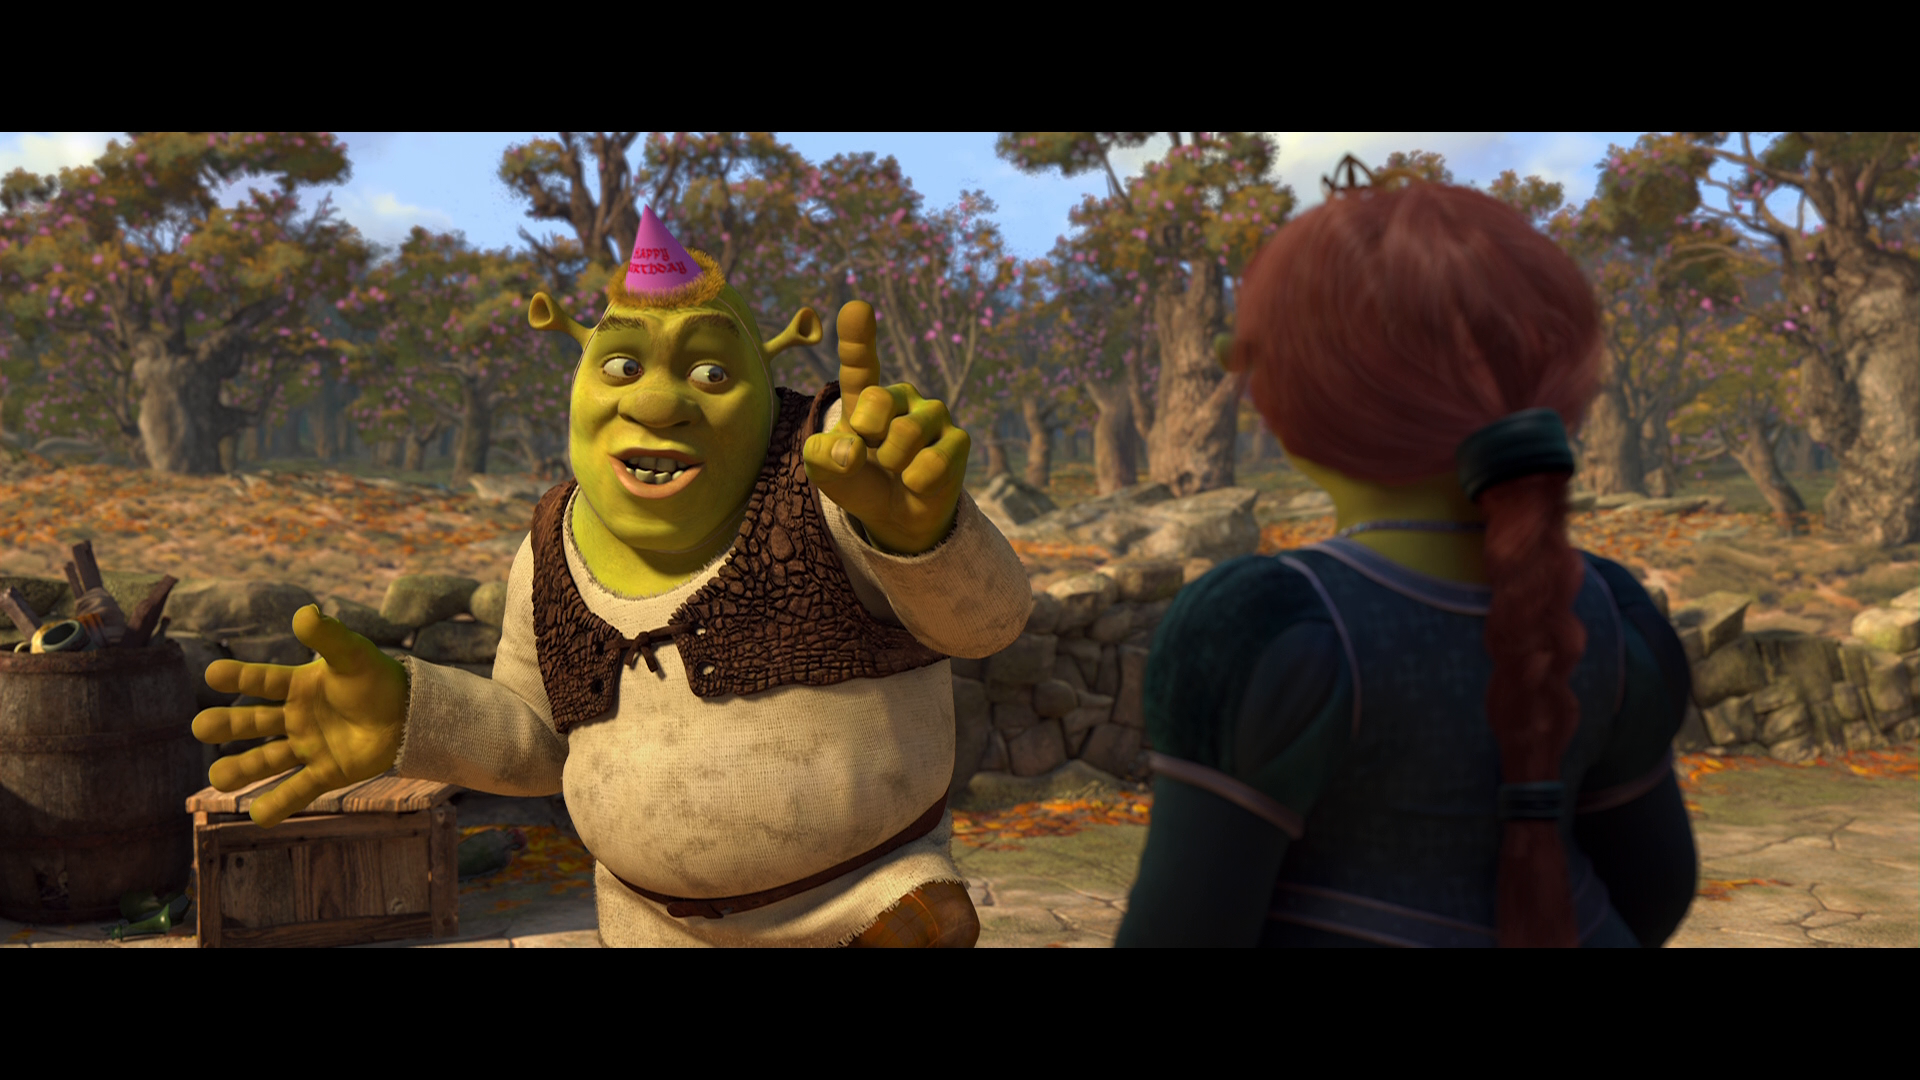 [怪物史瑞克4].Shrek.Forever.After.2010.2D.BluRay.1080p.AVC.TrueHD.7.1-Sm07   27.49G-8.png